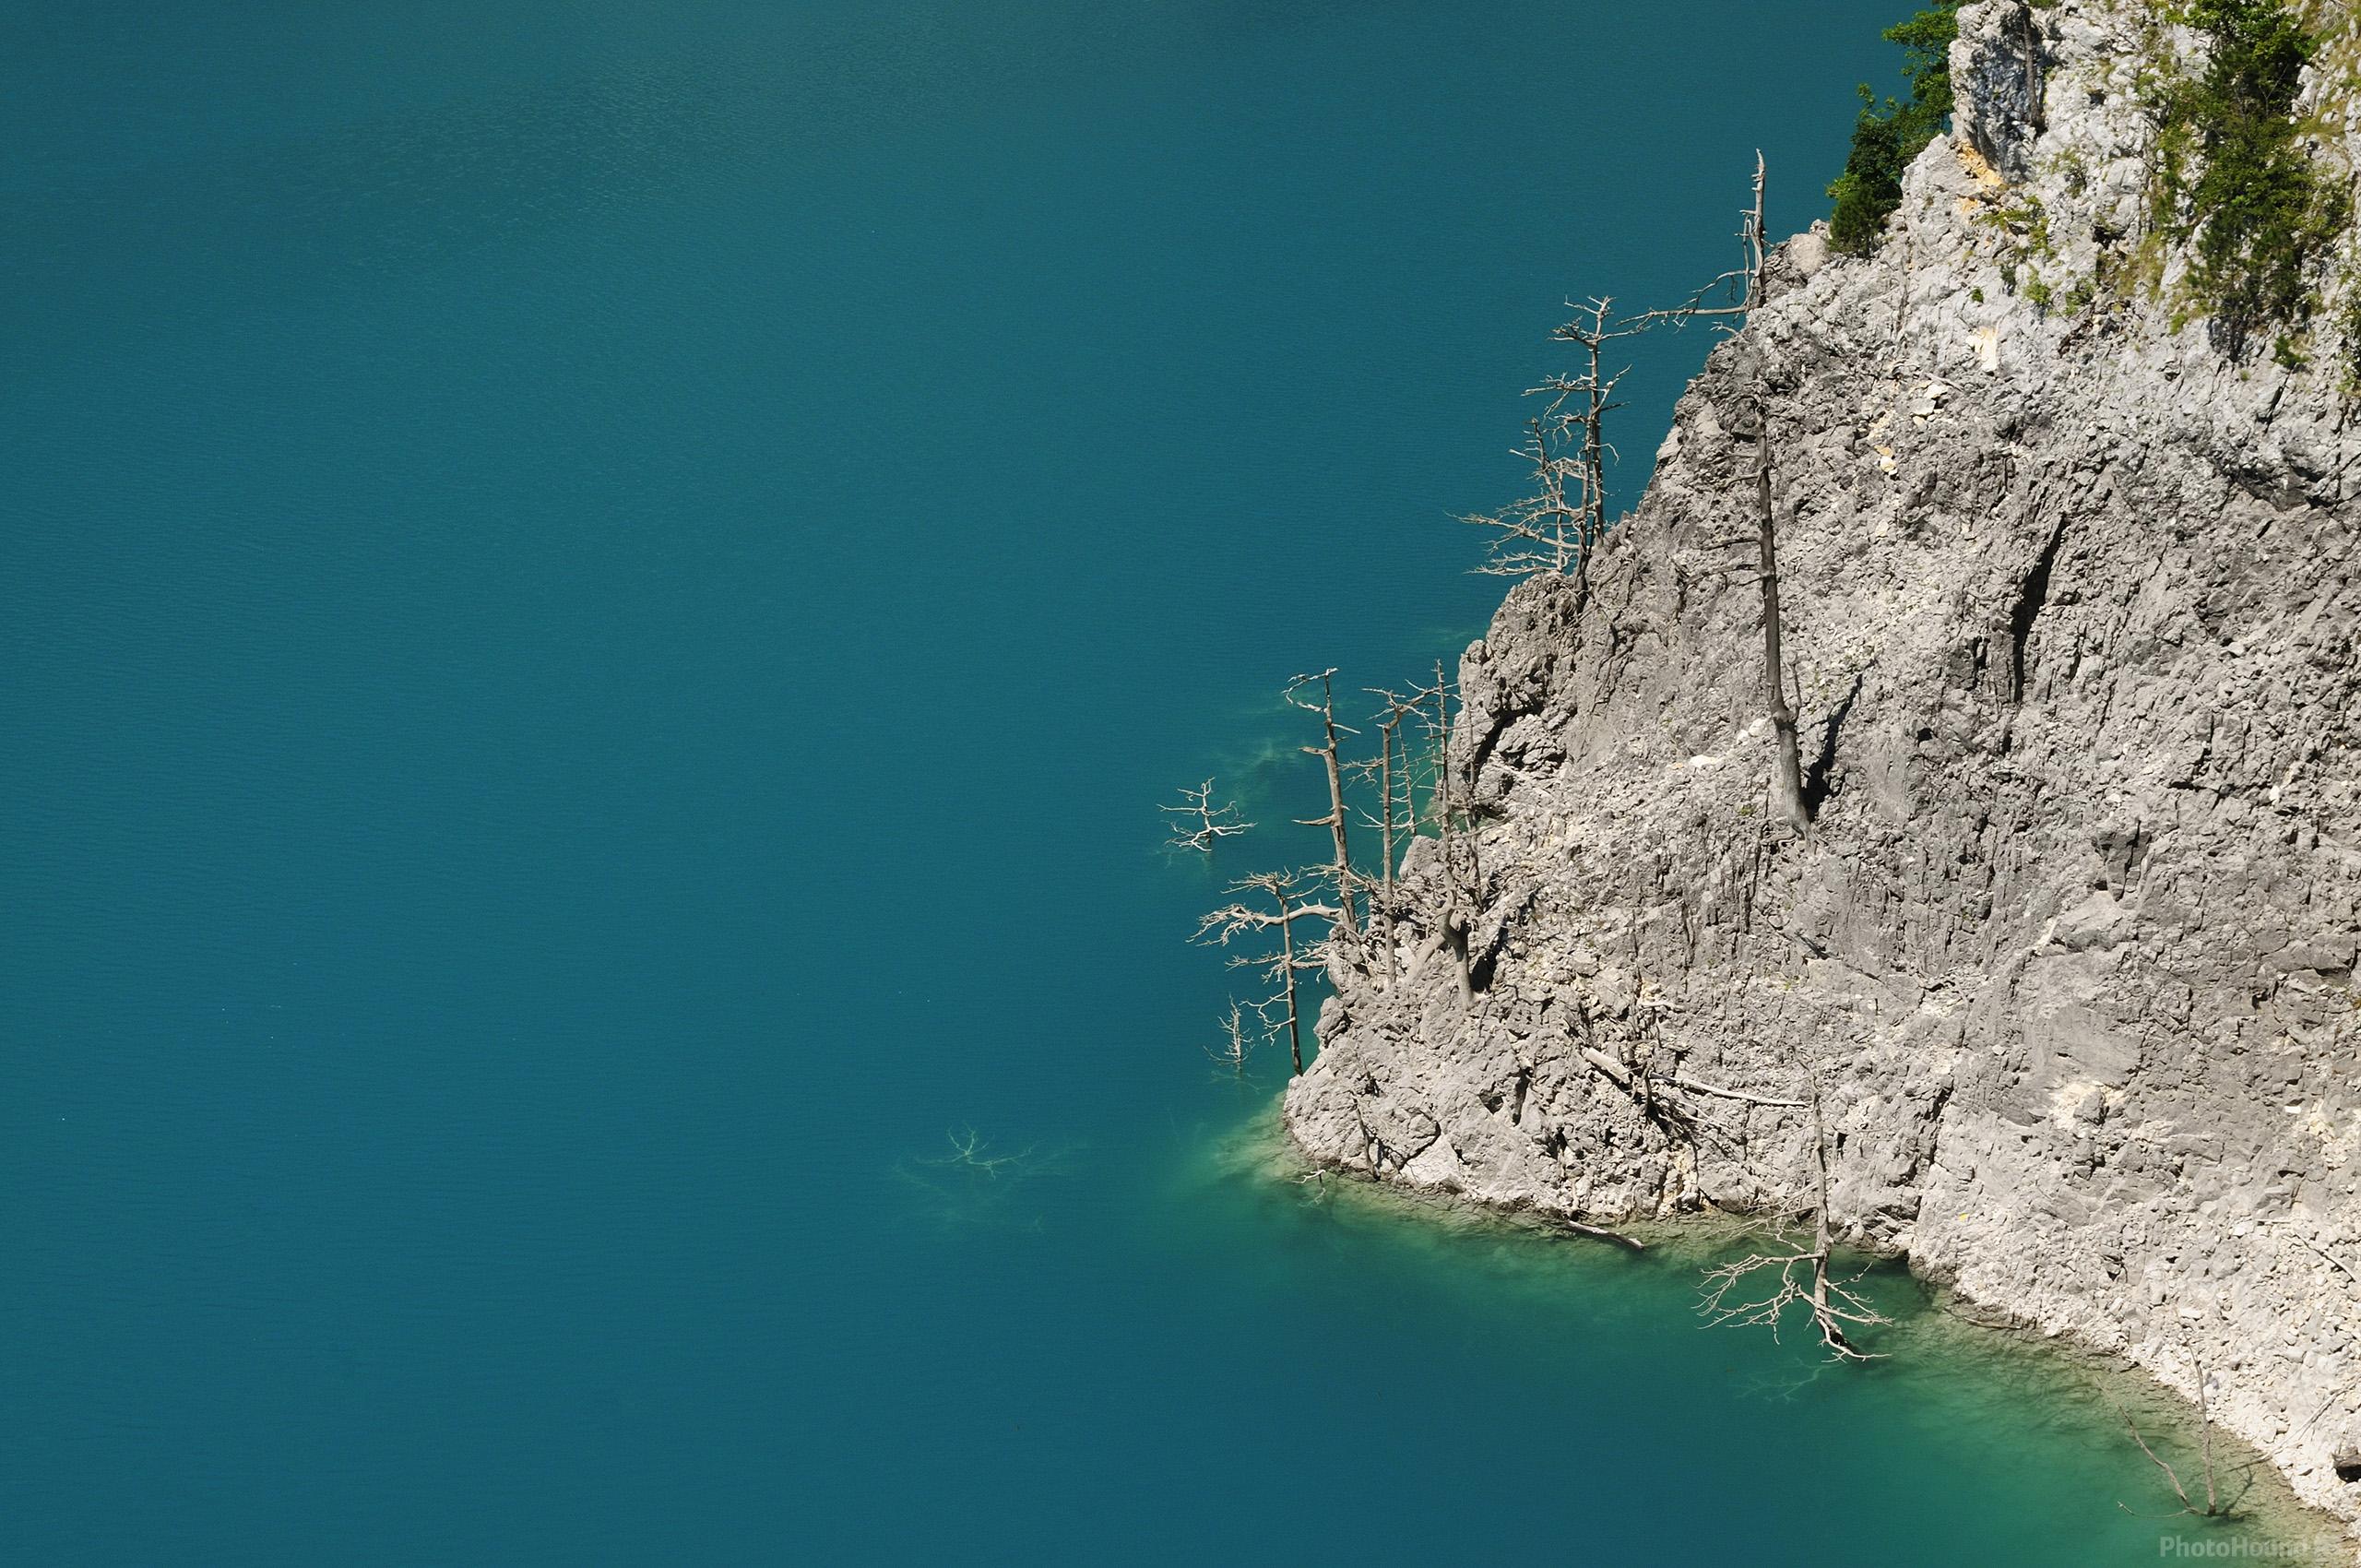 Image of Piva Lake and Canyon by Luka Esenko